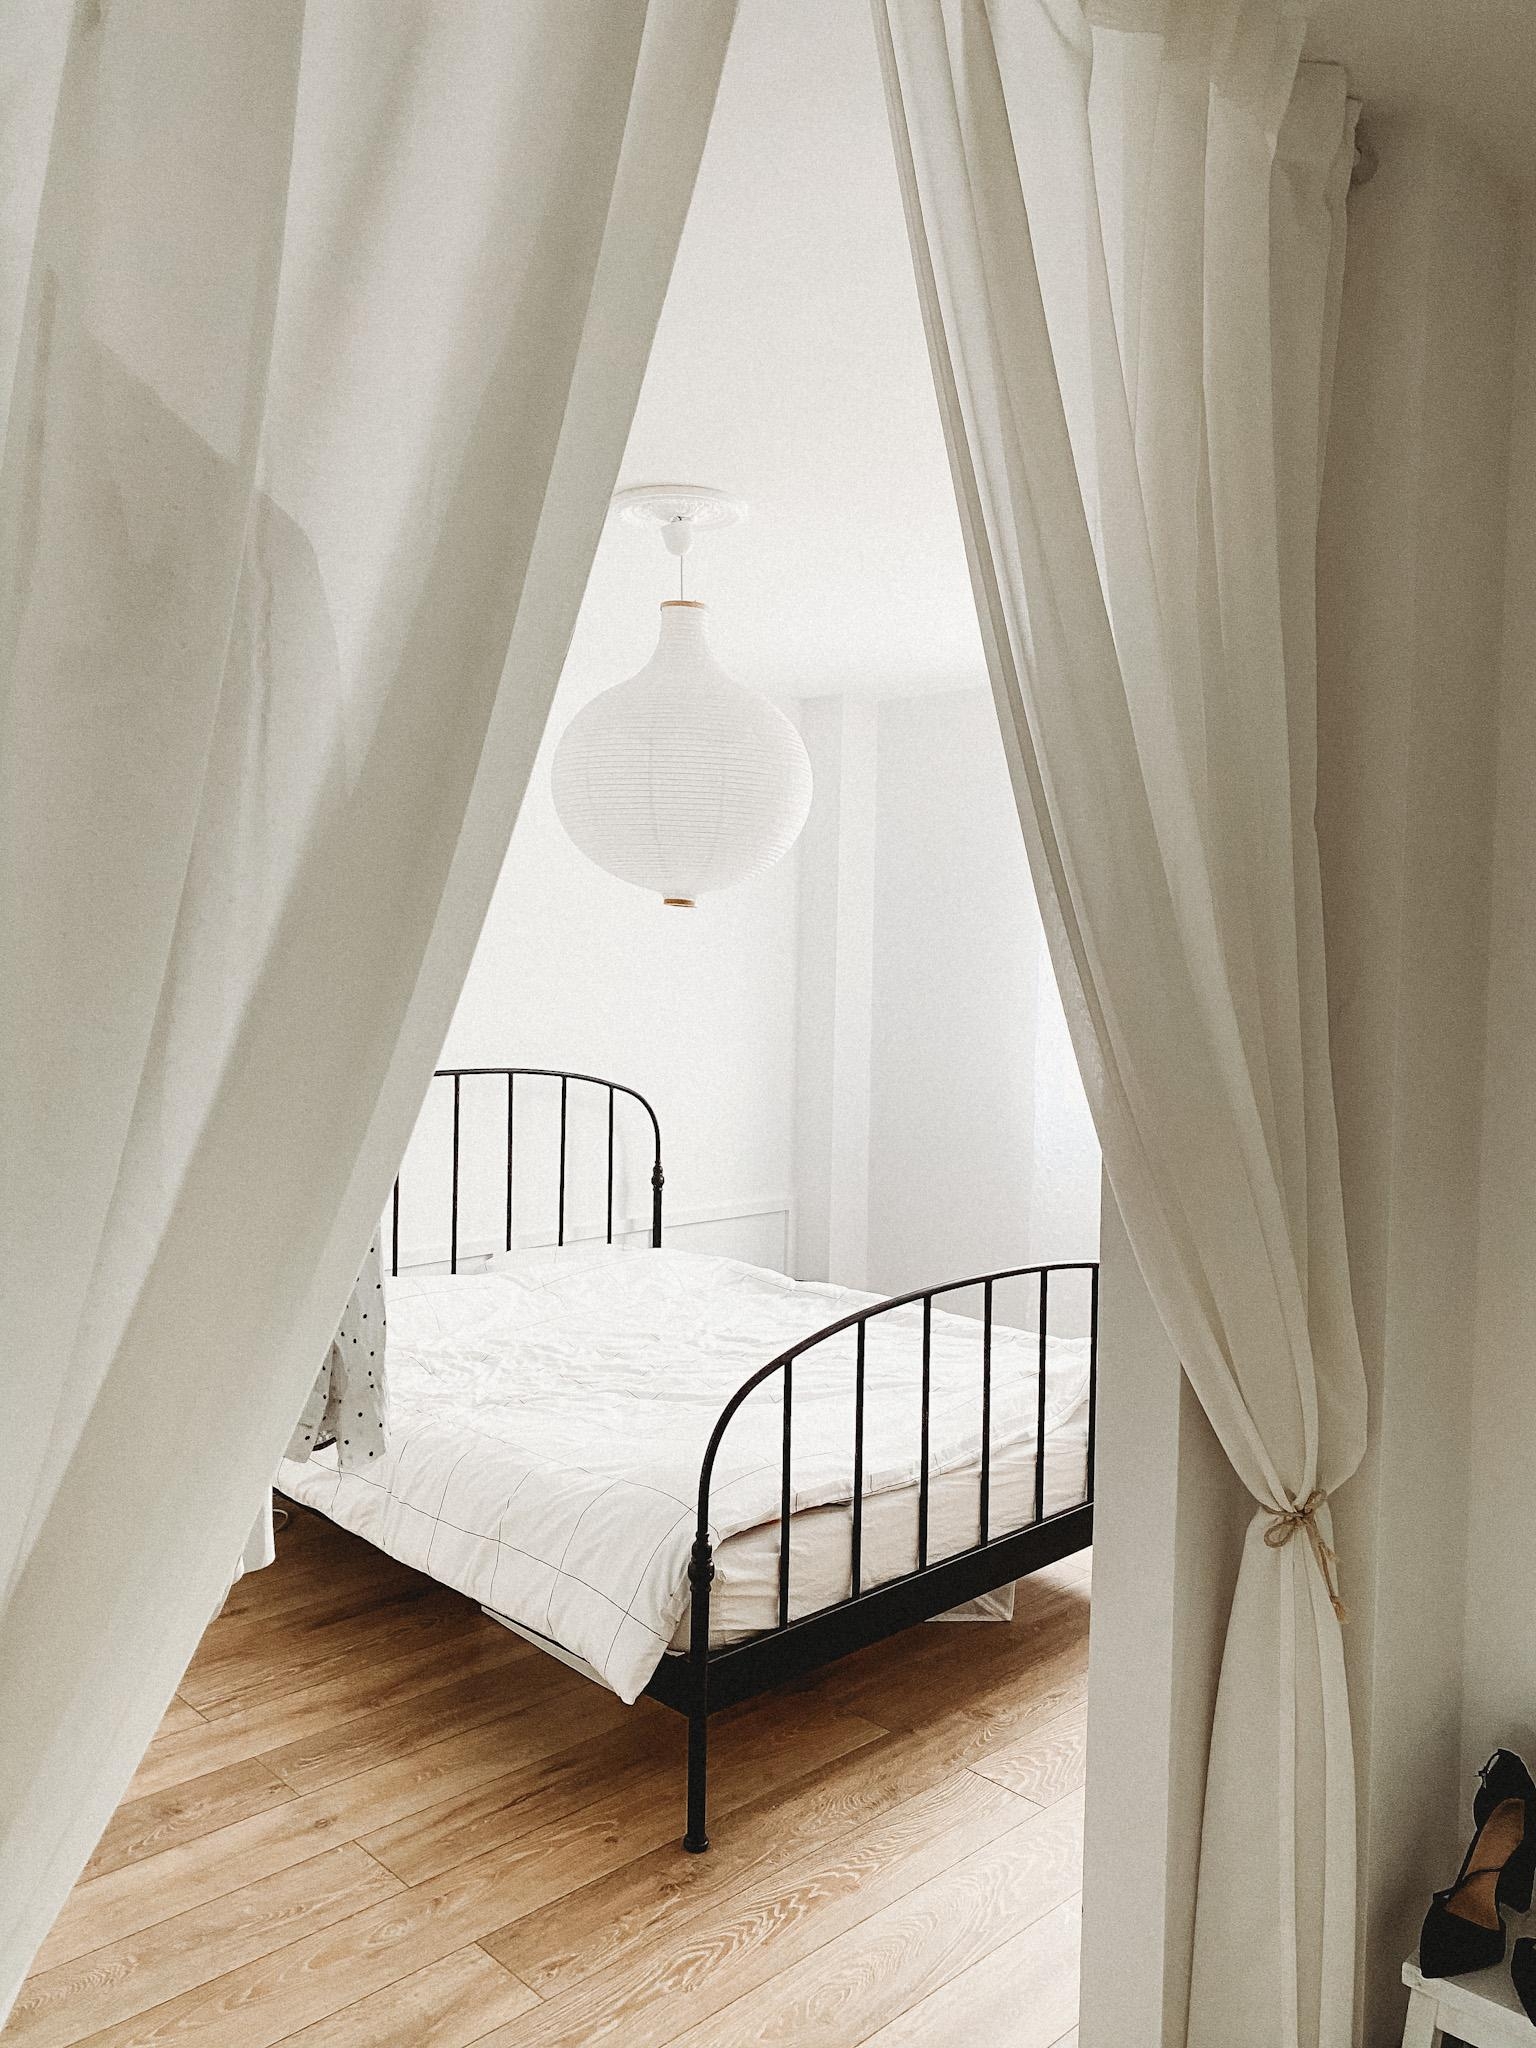 Vorhänge im Schlafzimmer als Raumtrenner. Inkl. DIY Raffhalter
#bedroom #couchstyle #diy #schlafzimmer